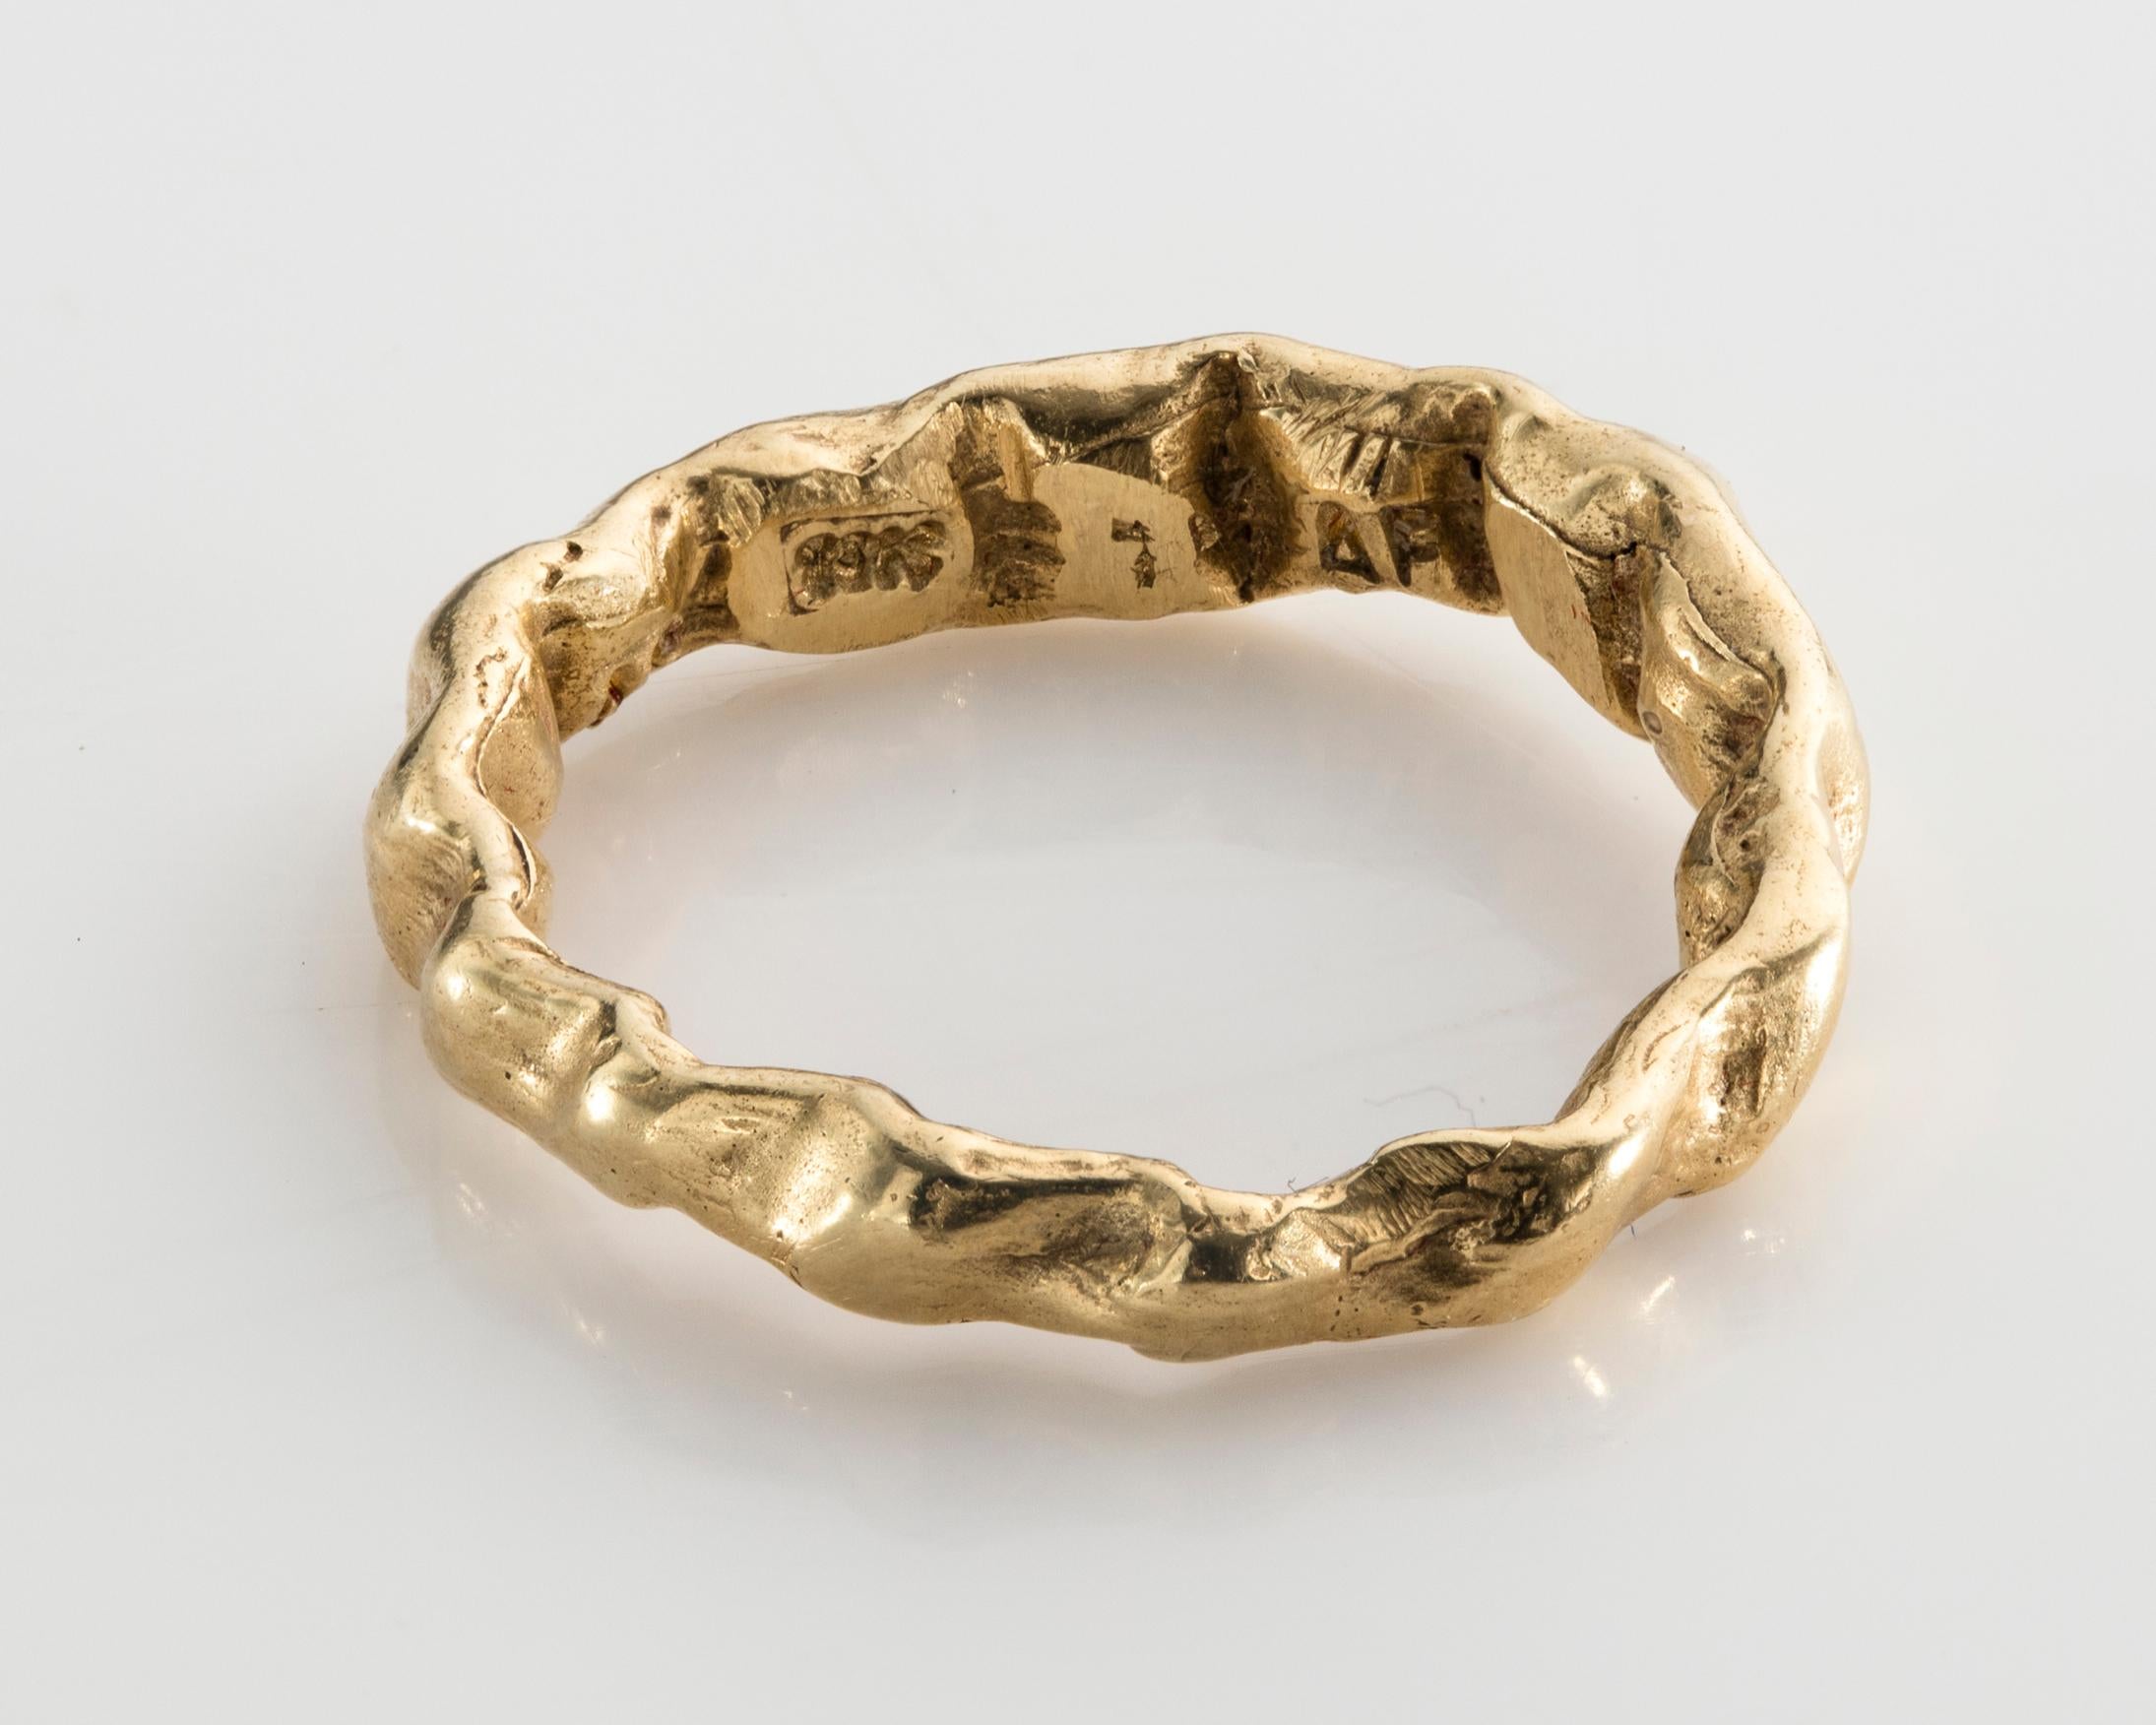 American Baroque 7 Ring in 18-Karat Gold by Anne Fischer, 2013